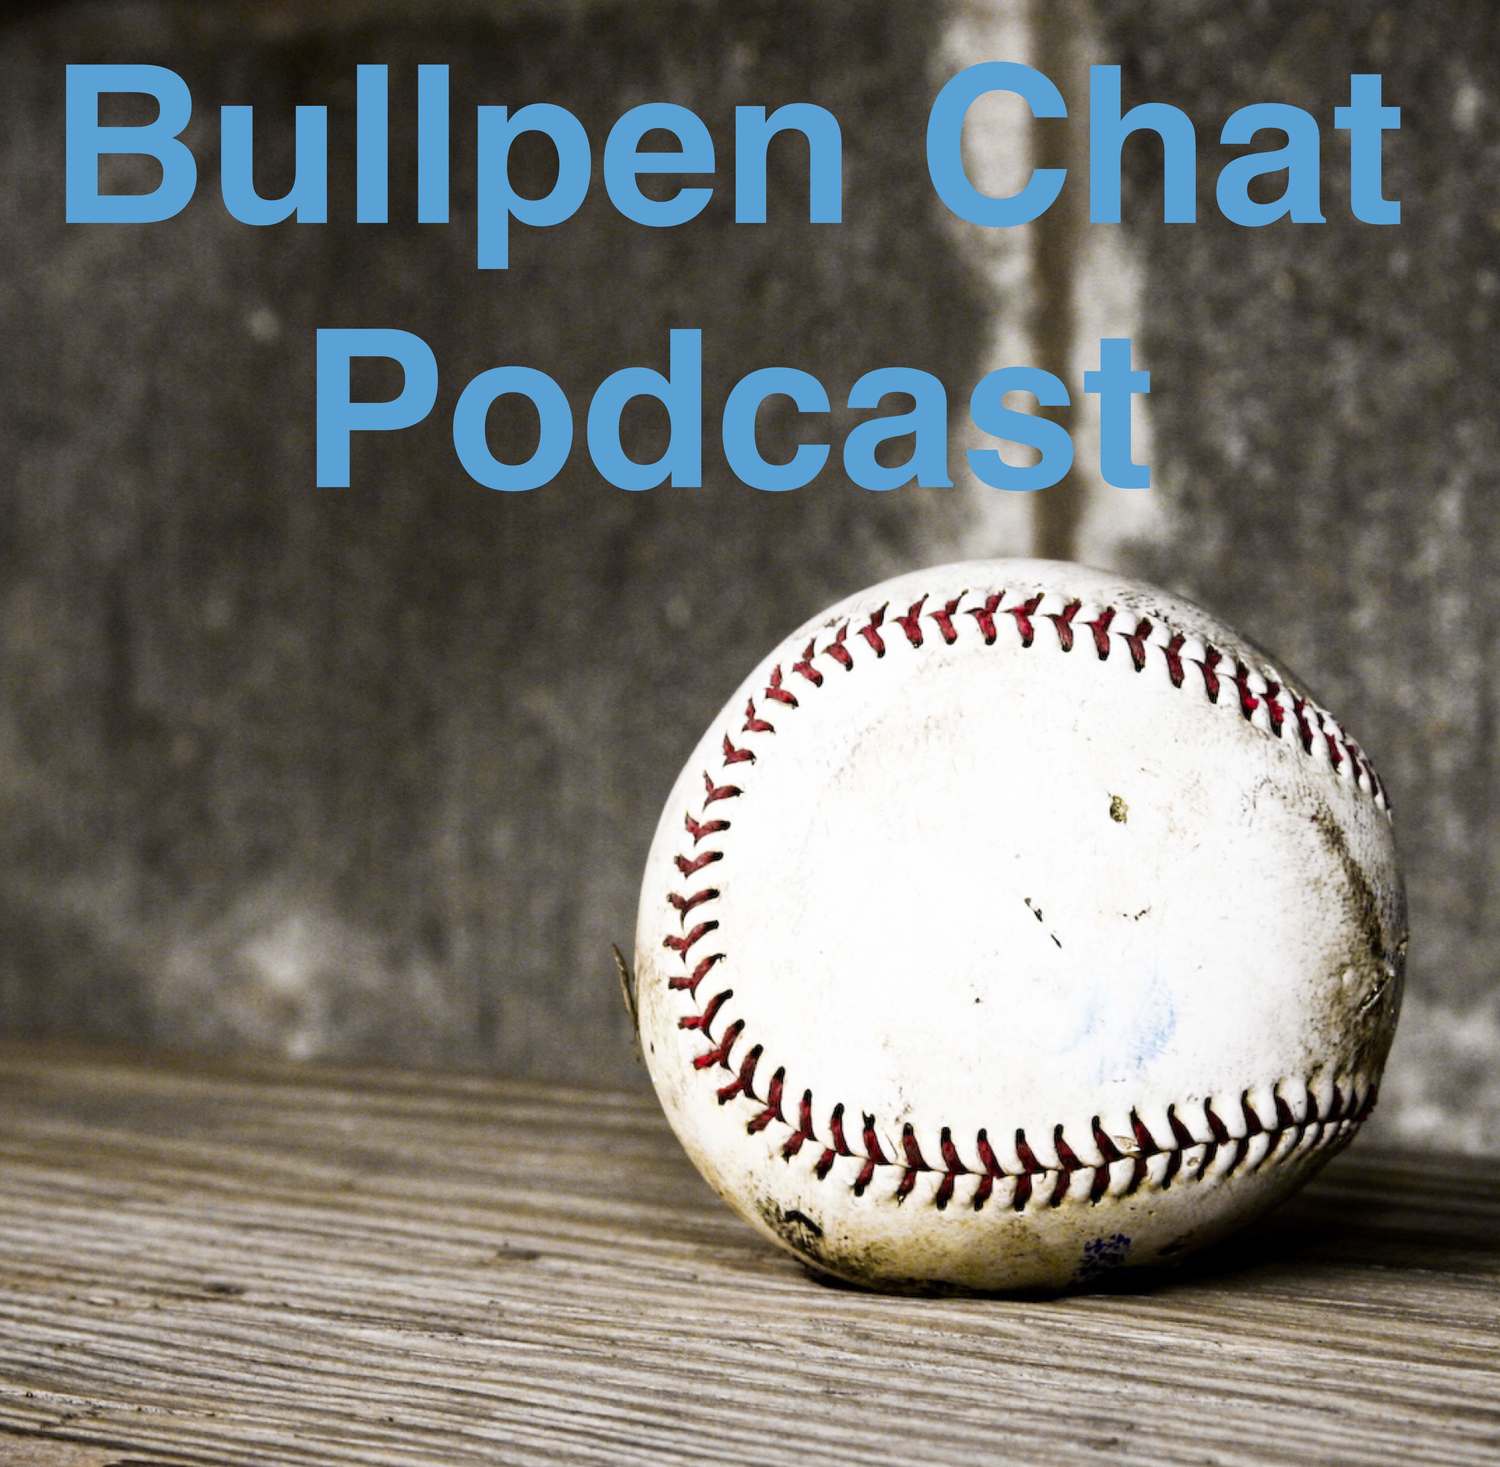 Bullpen Chat Podcast - Chris Goddu